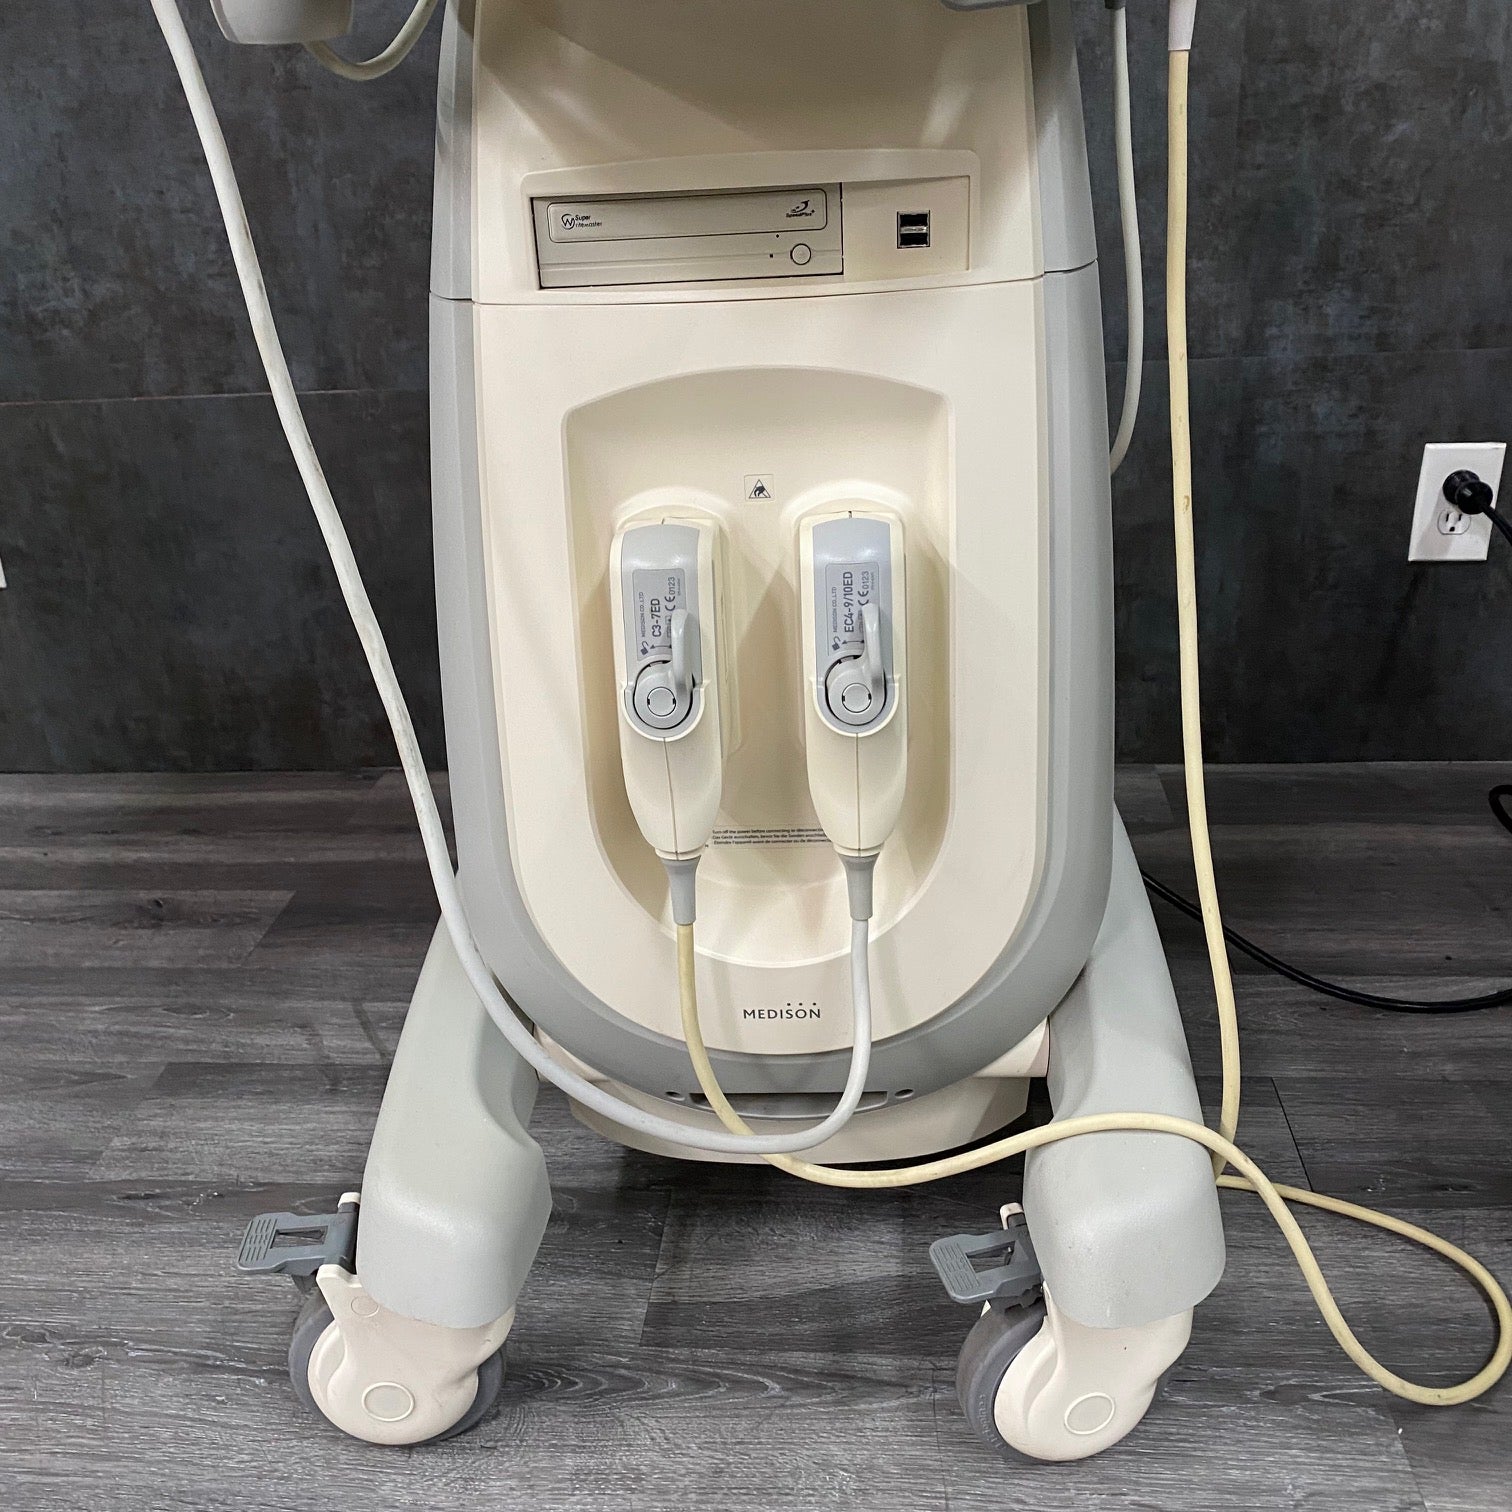 Medison SonoAce X4 Ultrasound Unit